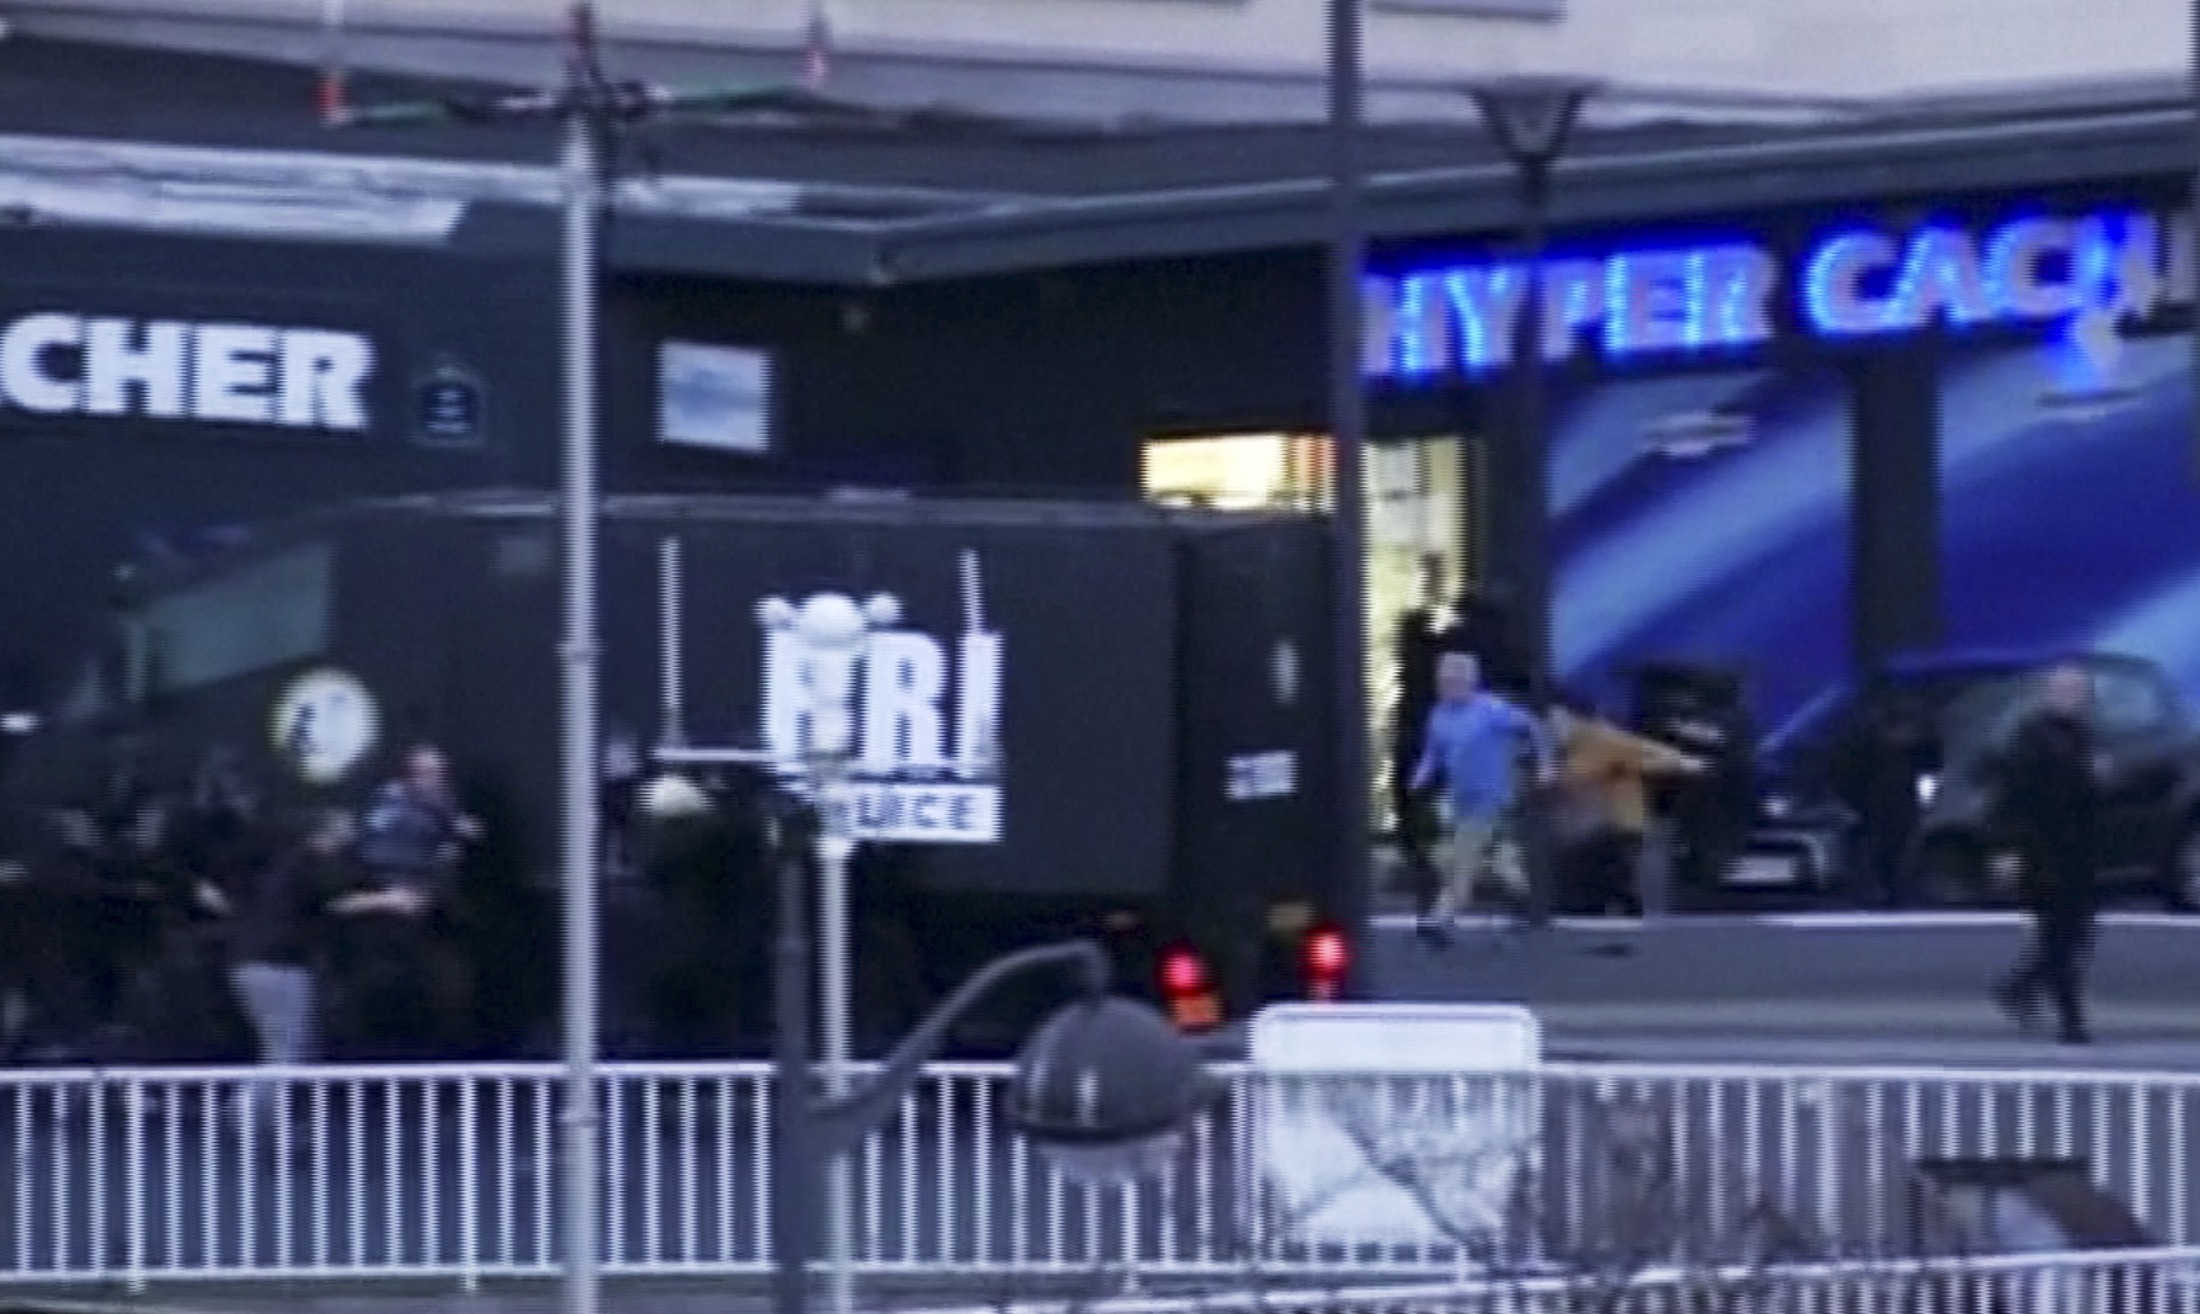 Терористът заложил експлозиви в еврейския магазин